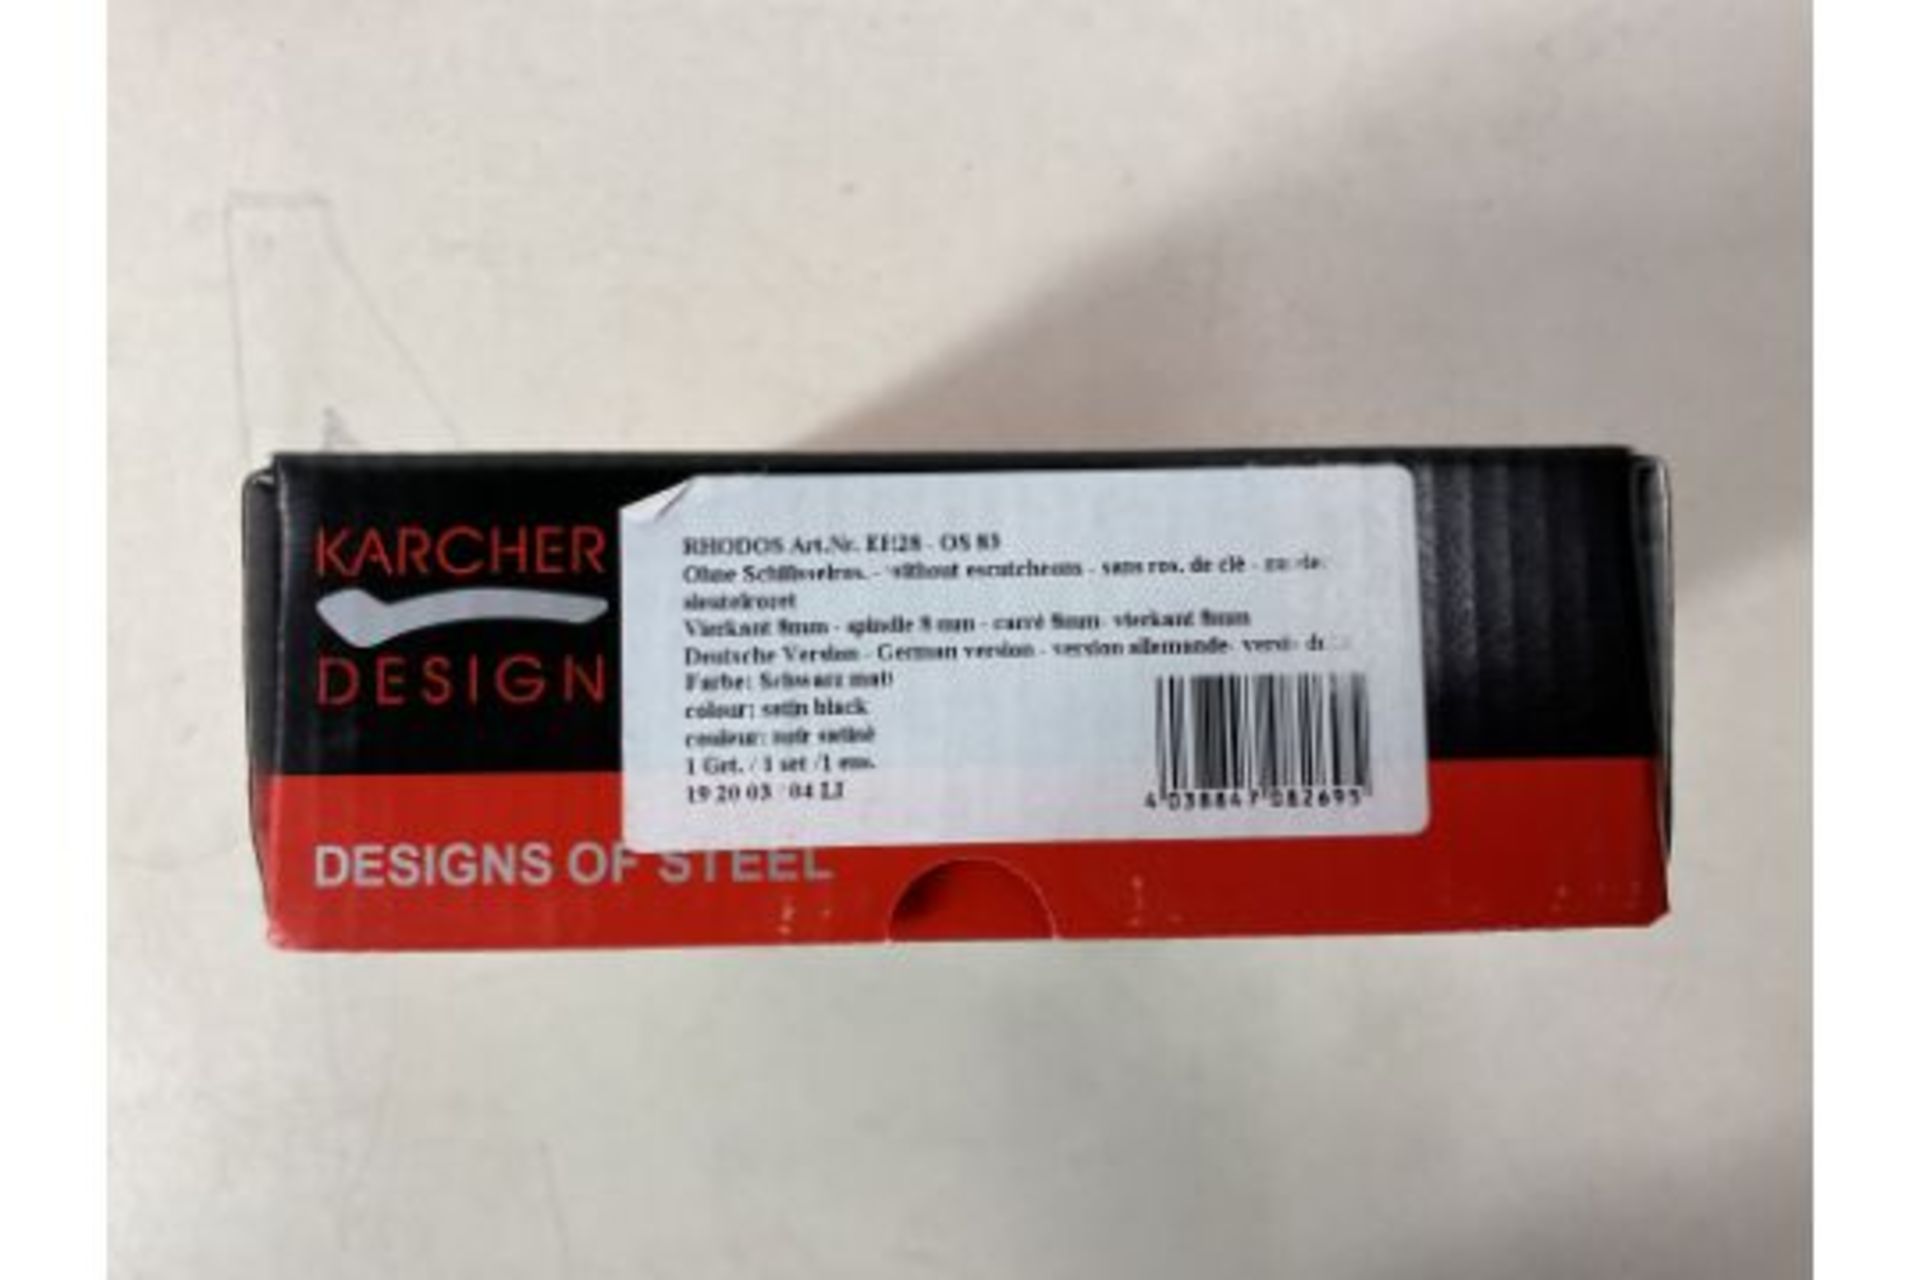 6 x Karcher Design Set Of Door Handles 19mm Satin Black - Image 2 of 2